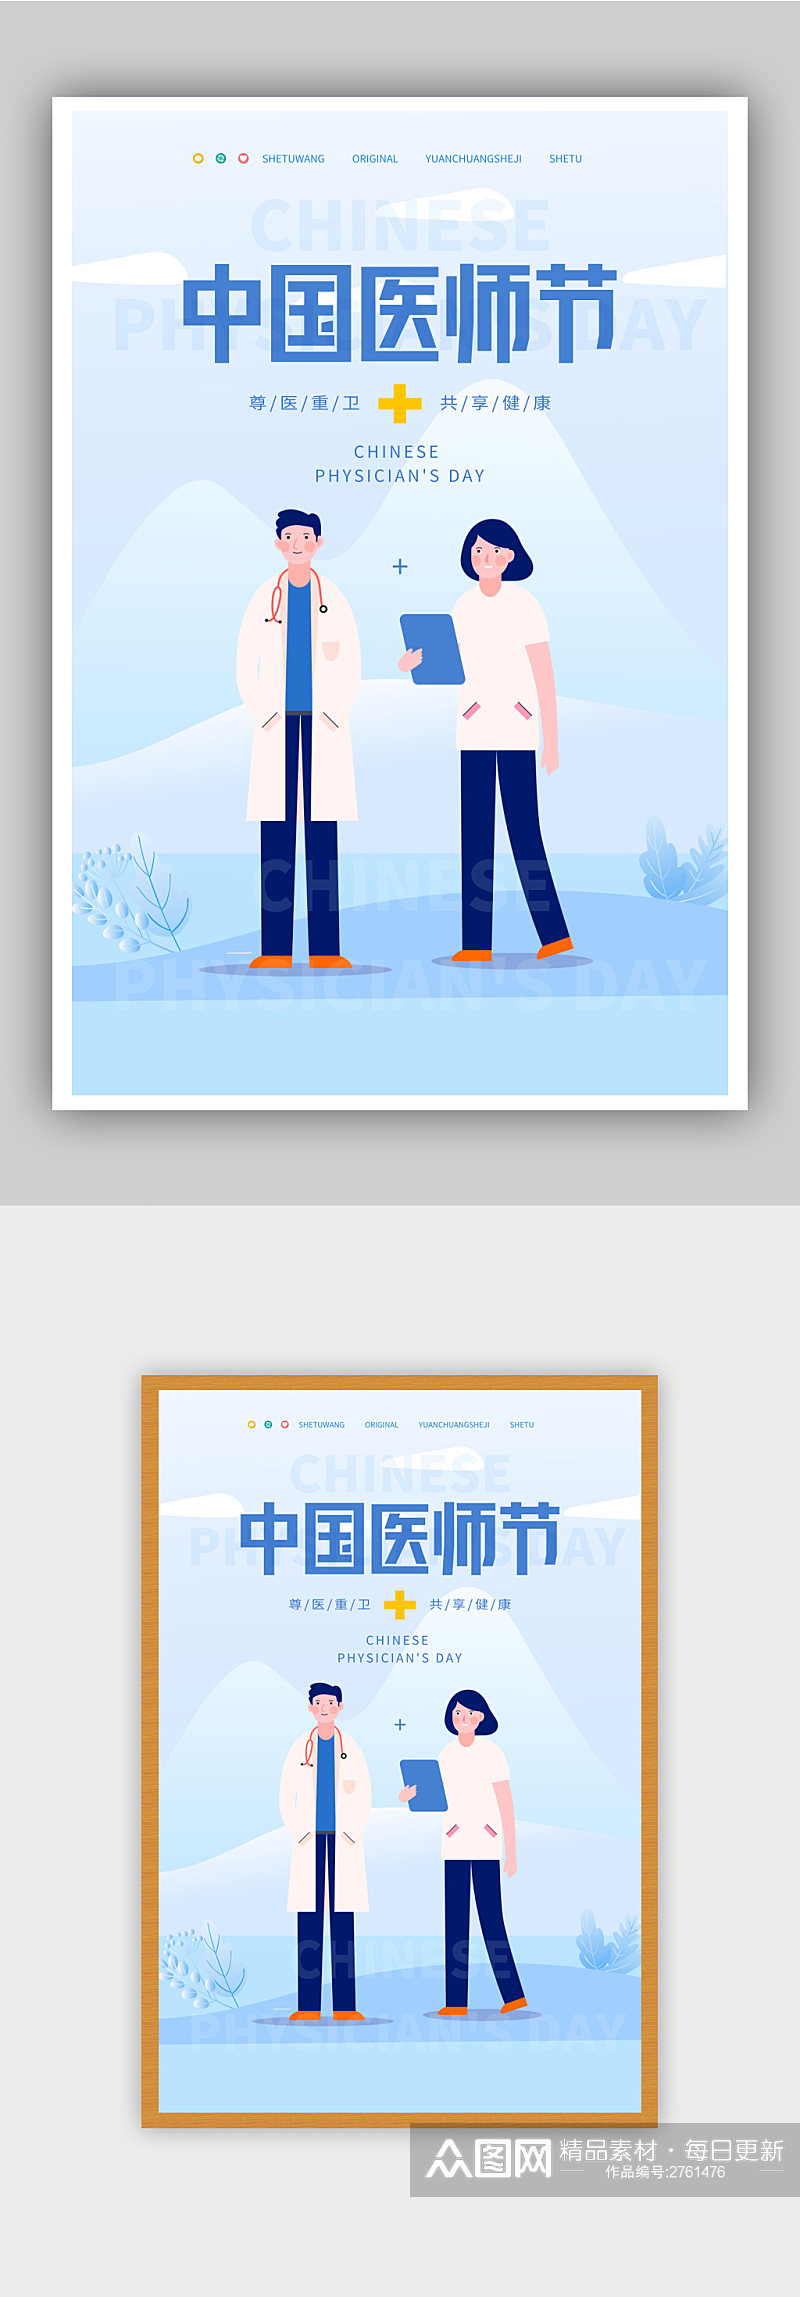 插画风格中国医师节宣传海报素材